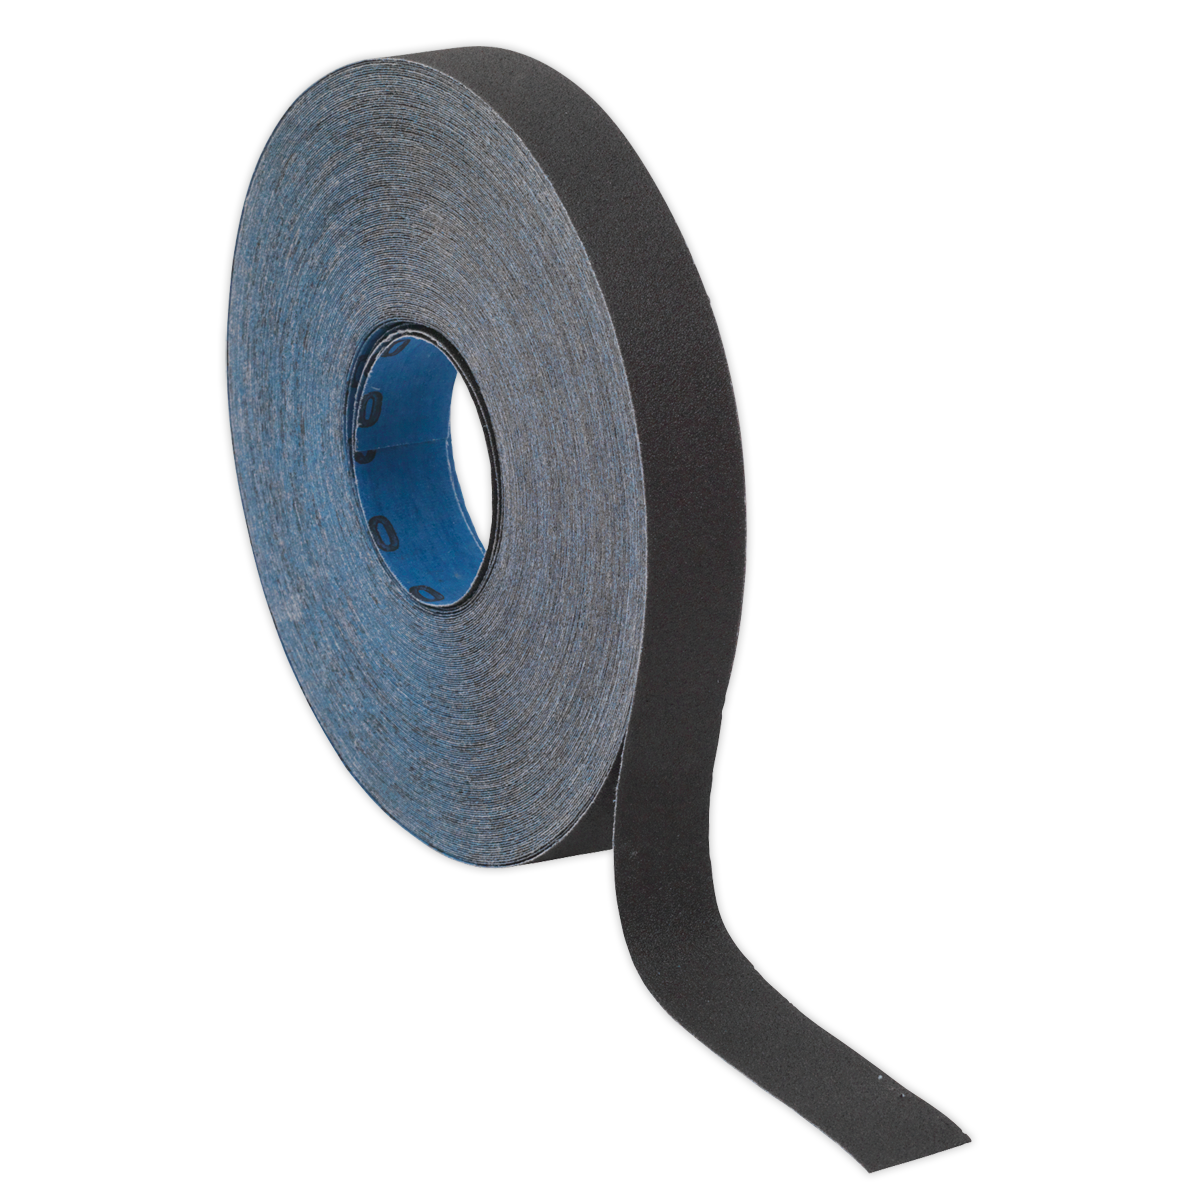 Sealey Emery Roll Blue Twill 25mm x 25m 80Grit